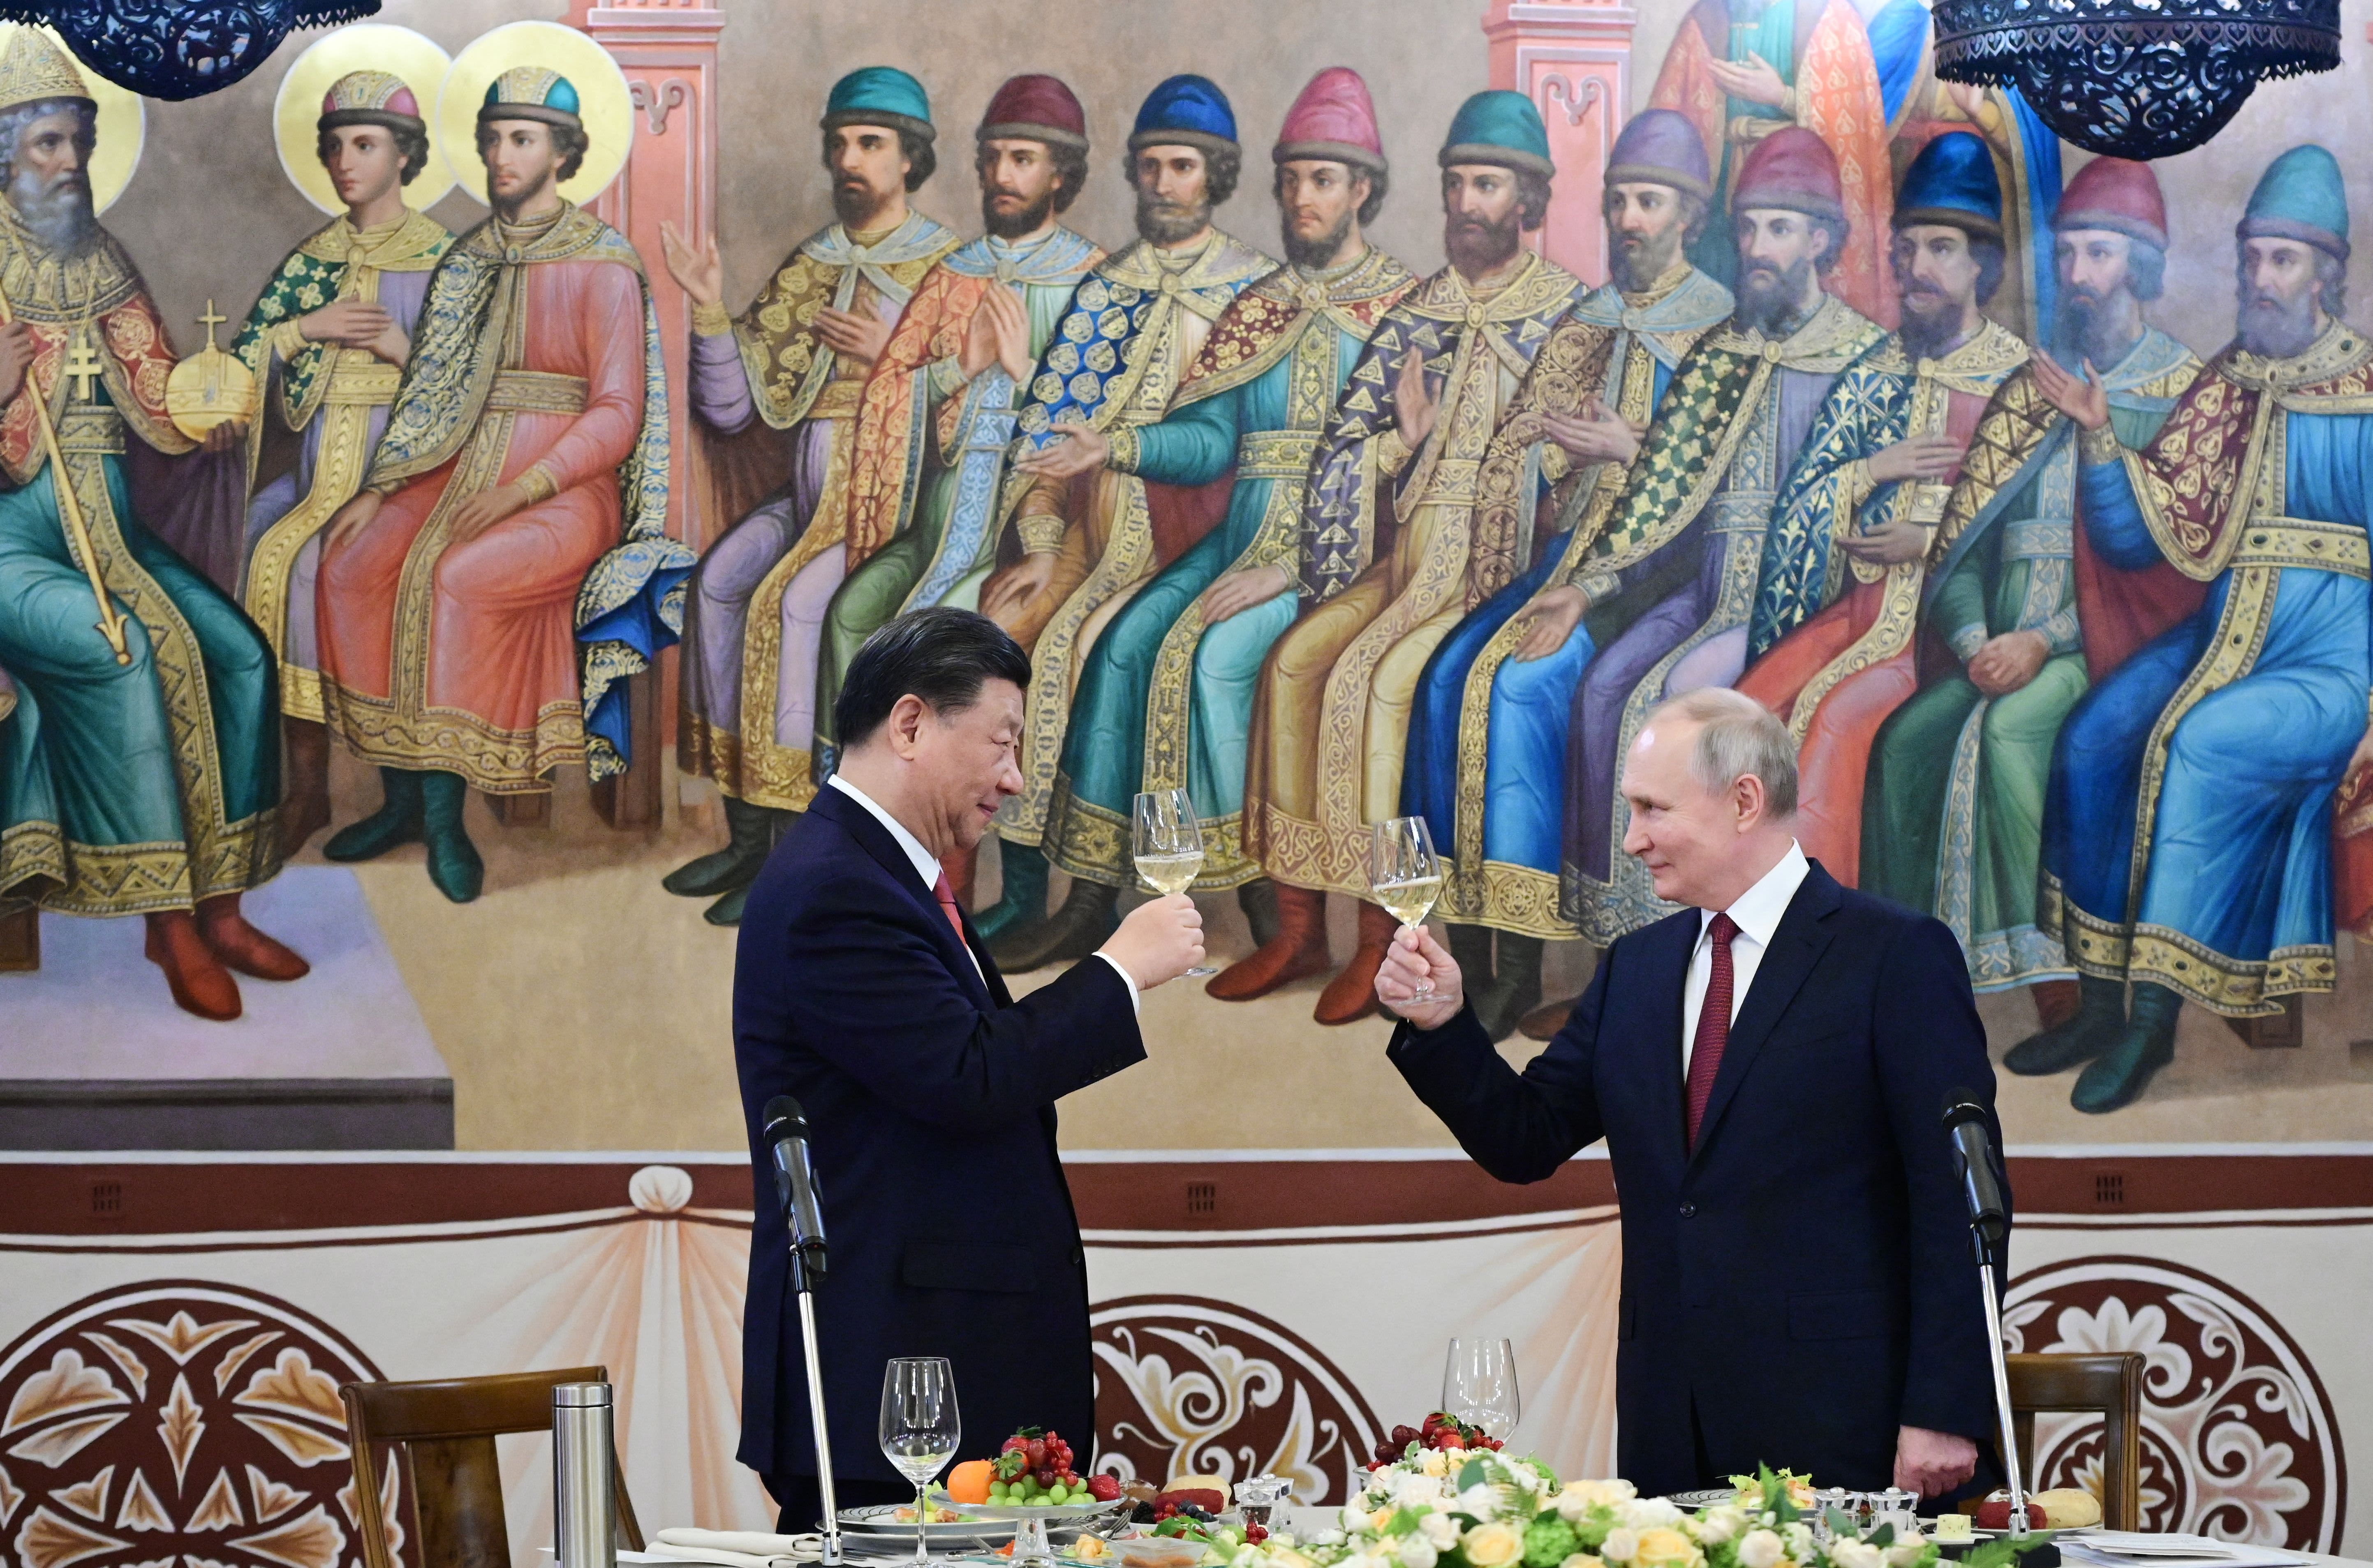 Chiny i Rosja potwierdzają wieloletnią współpracę gospodarczą